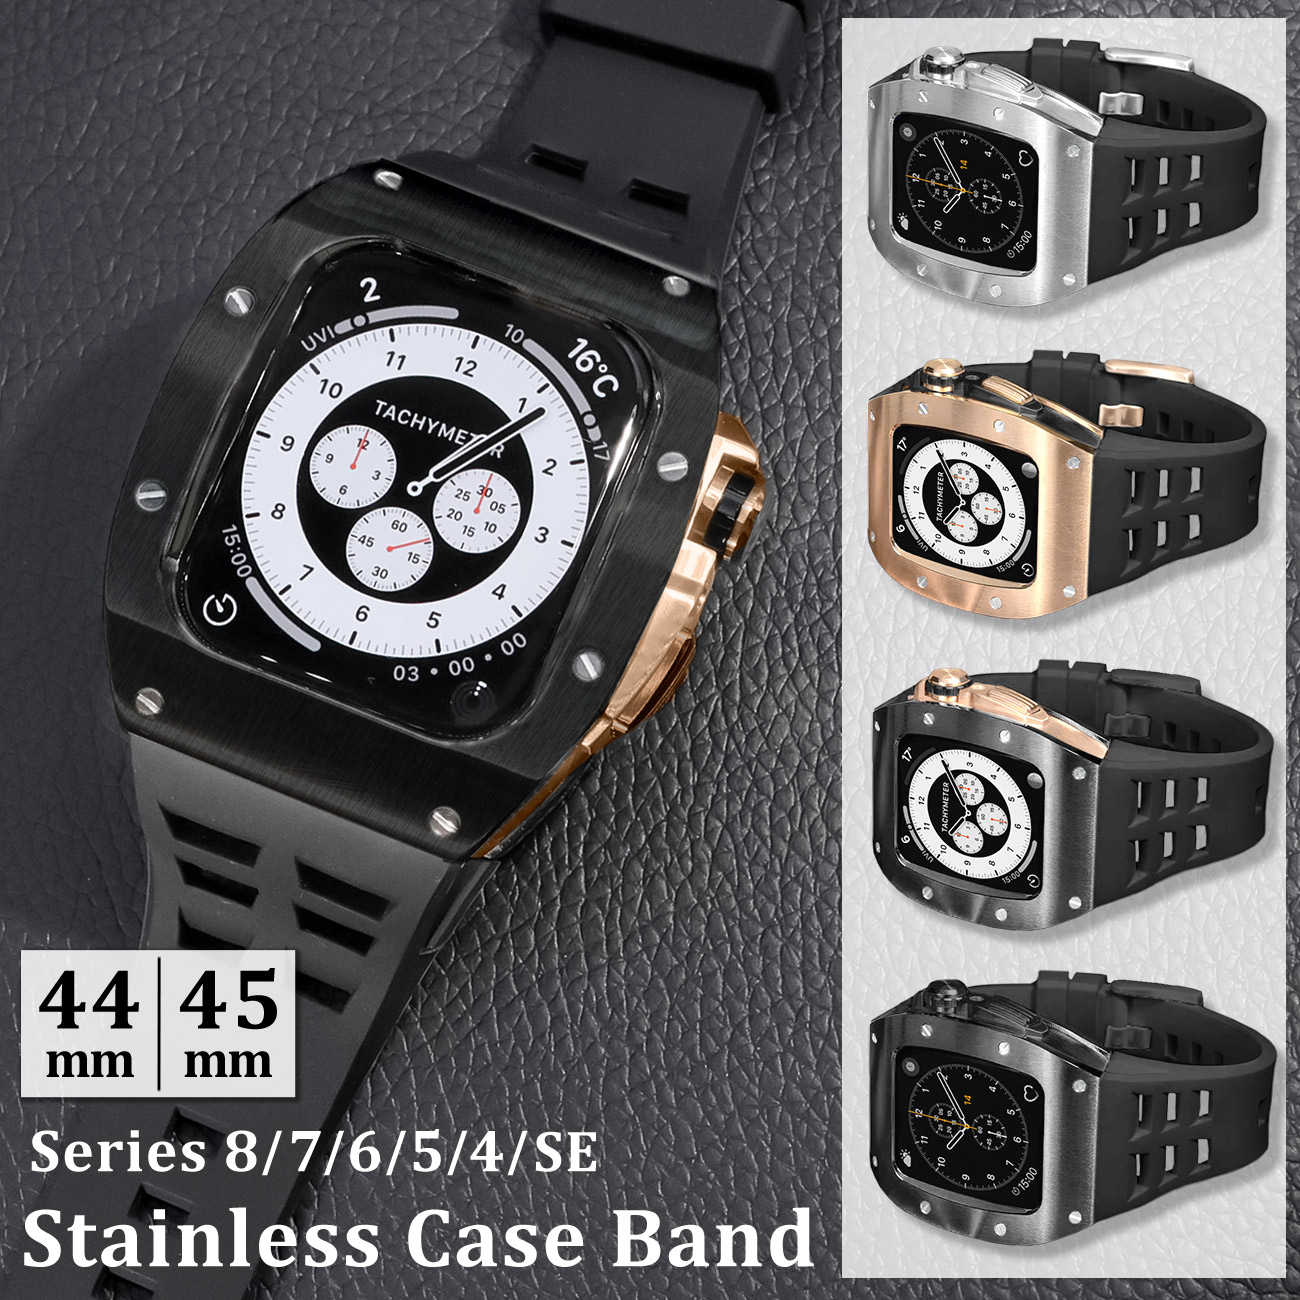 アップルウォッチ ケース バンド 高級 替え ベルト カバー メンズ 高品質 高耐久 金属アレルギー 対応 ステンレス Apple Watch 高級ケース 高級ベルト 44mm 45mm Series SE applewatch 一体型 おしゃれ メンズ